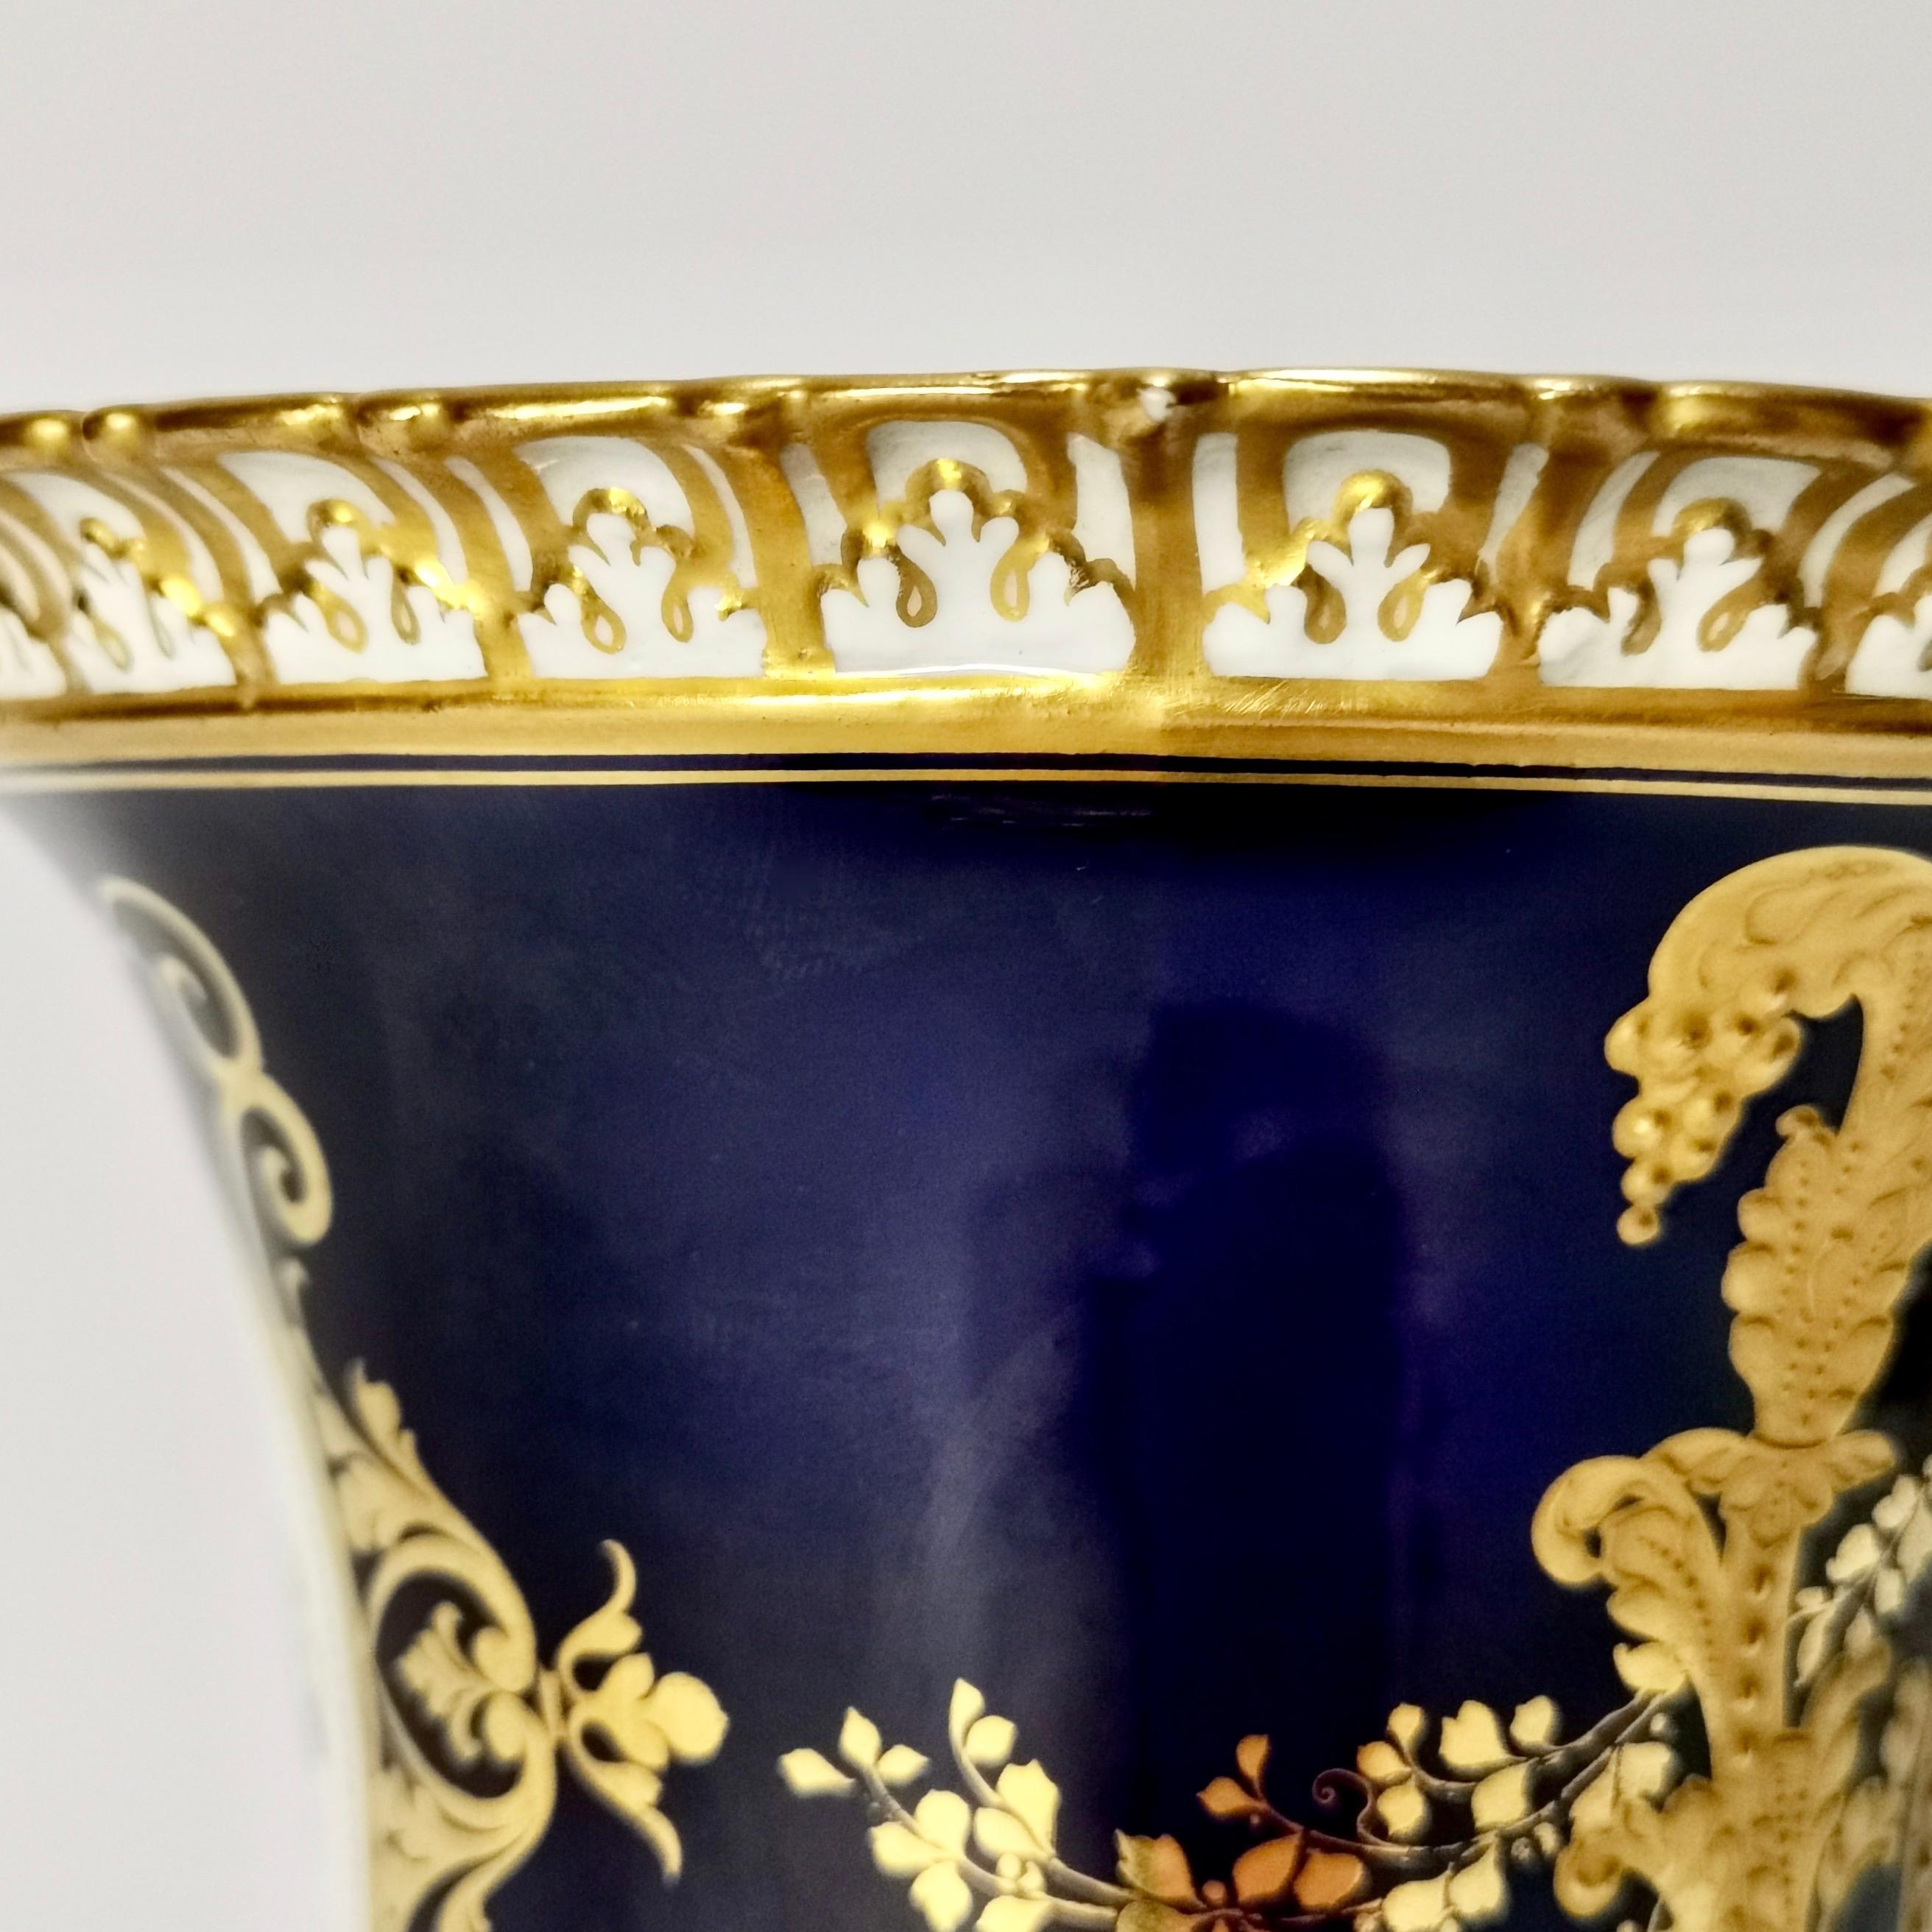 Royal Crown Derby Porcelain Campana Vase, Cobalt Blue, Flowers by C Gresley 1916 For Sale 5